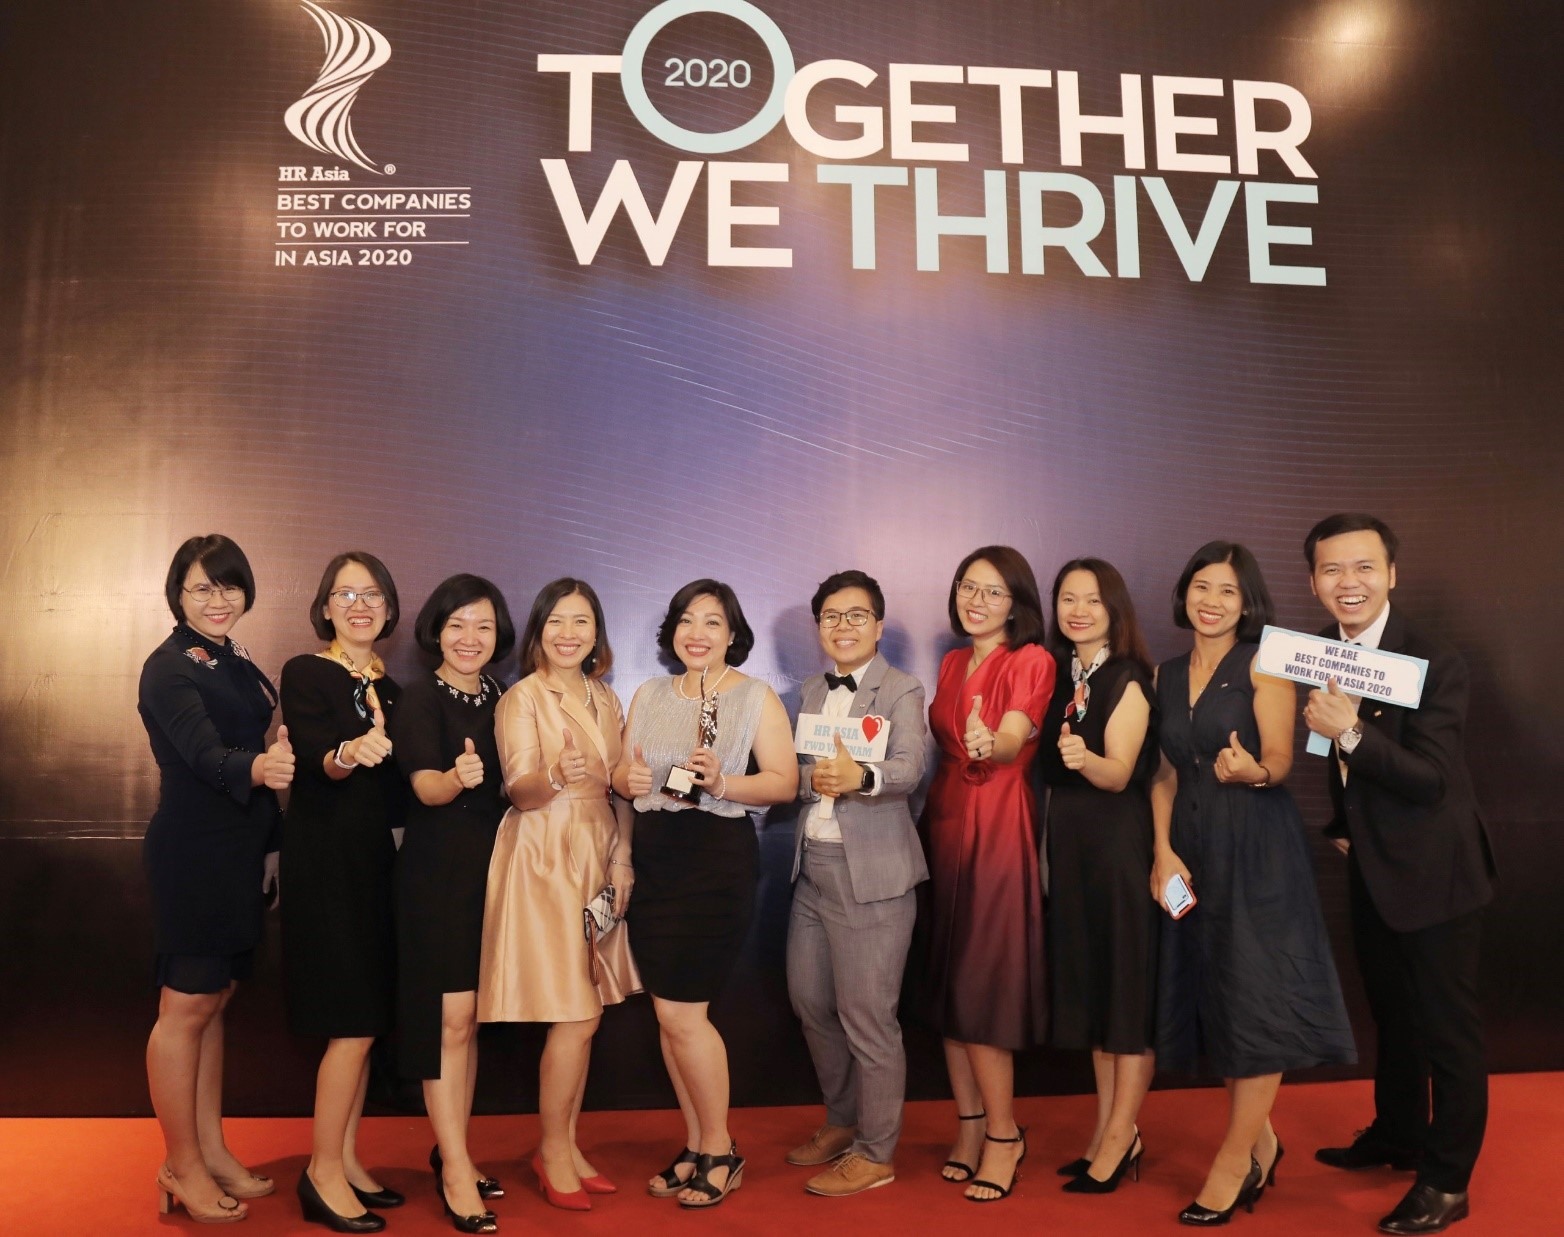 Chỉ với 4 năm gia nhập thị trường Việt Nam, FWD đã vinh dự nhận giải thưởng uy tín từ HR Asia - Tạp chí nhân sự uy tín hàng đầu Châu Á